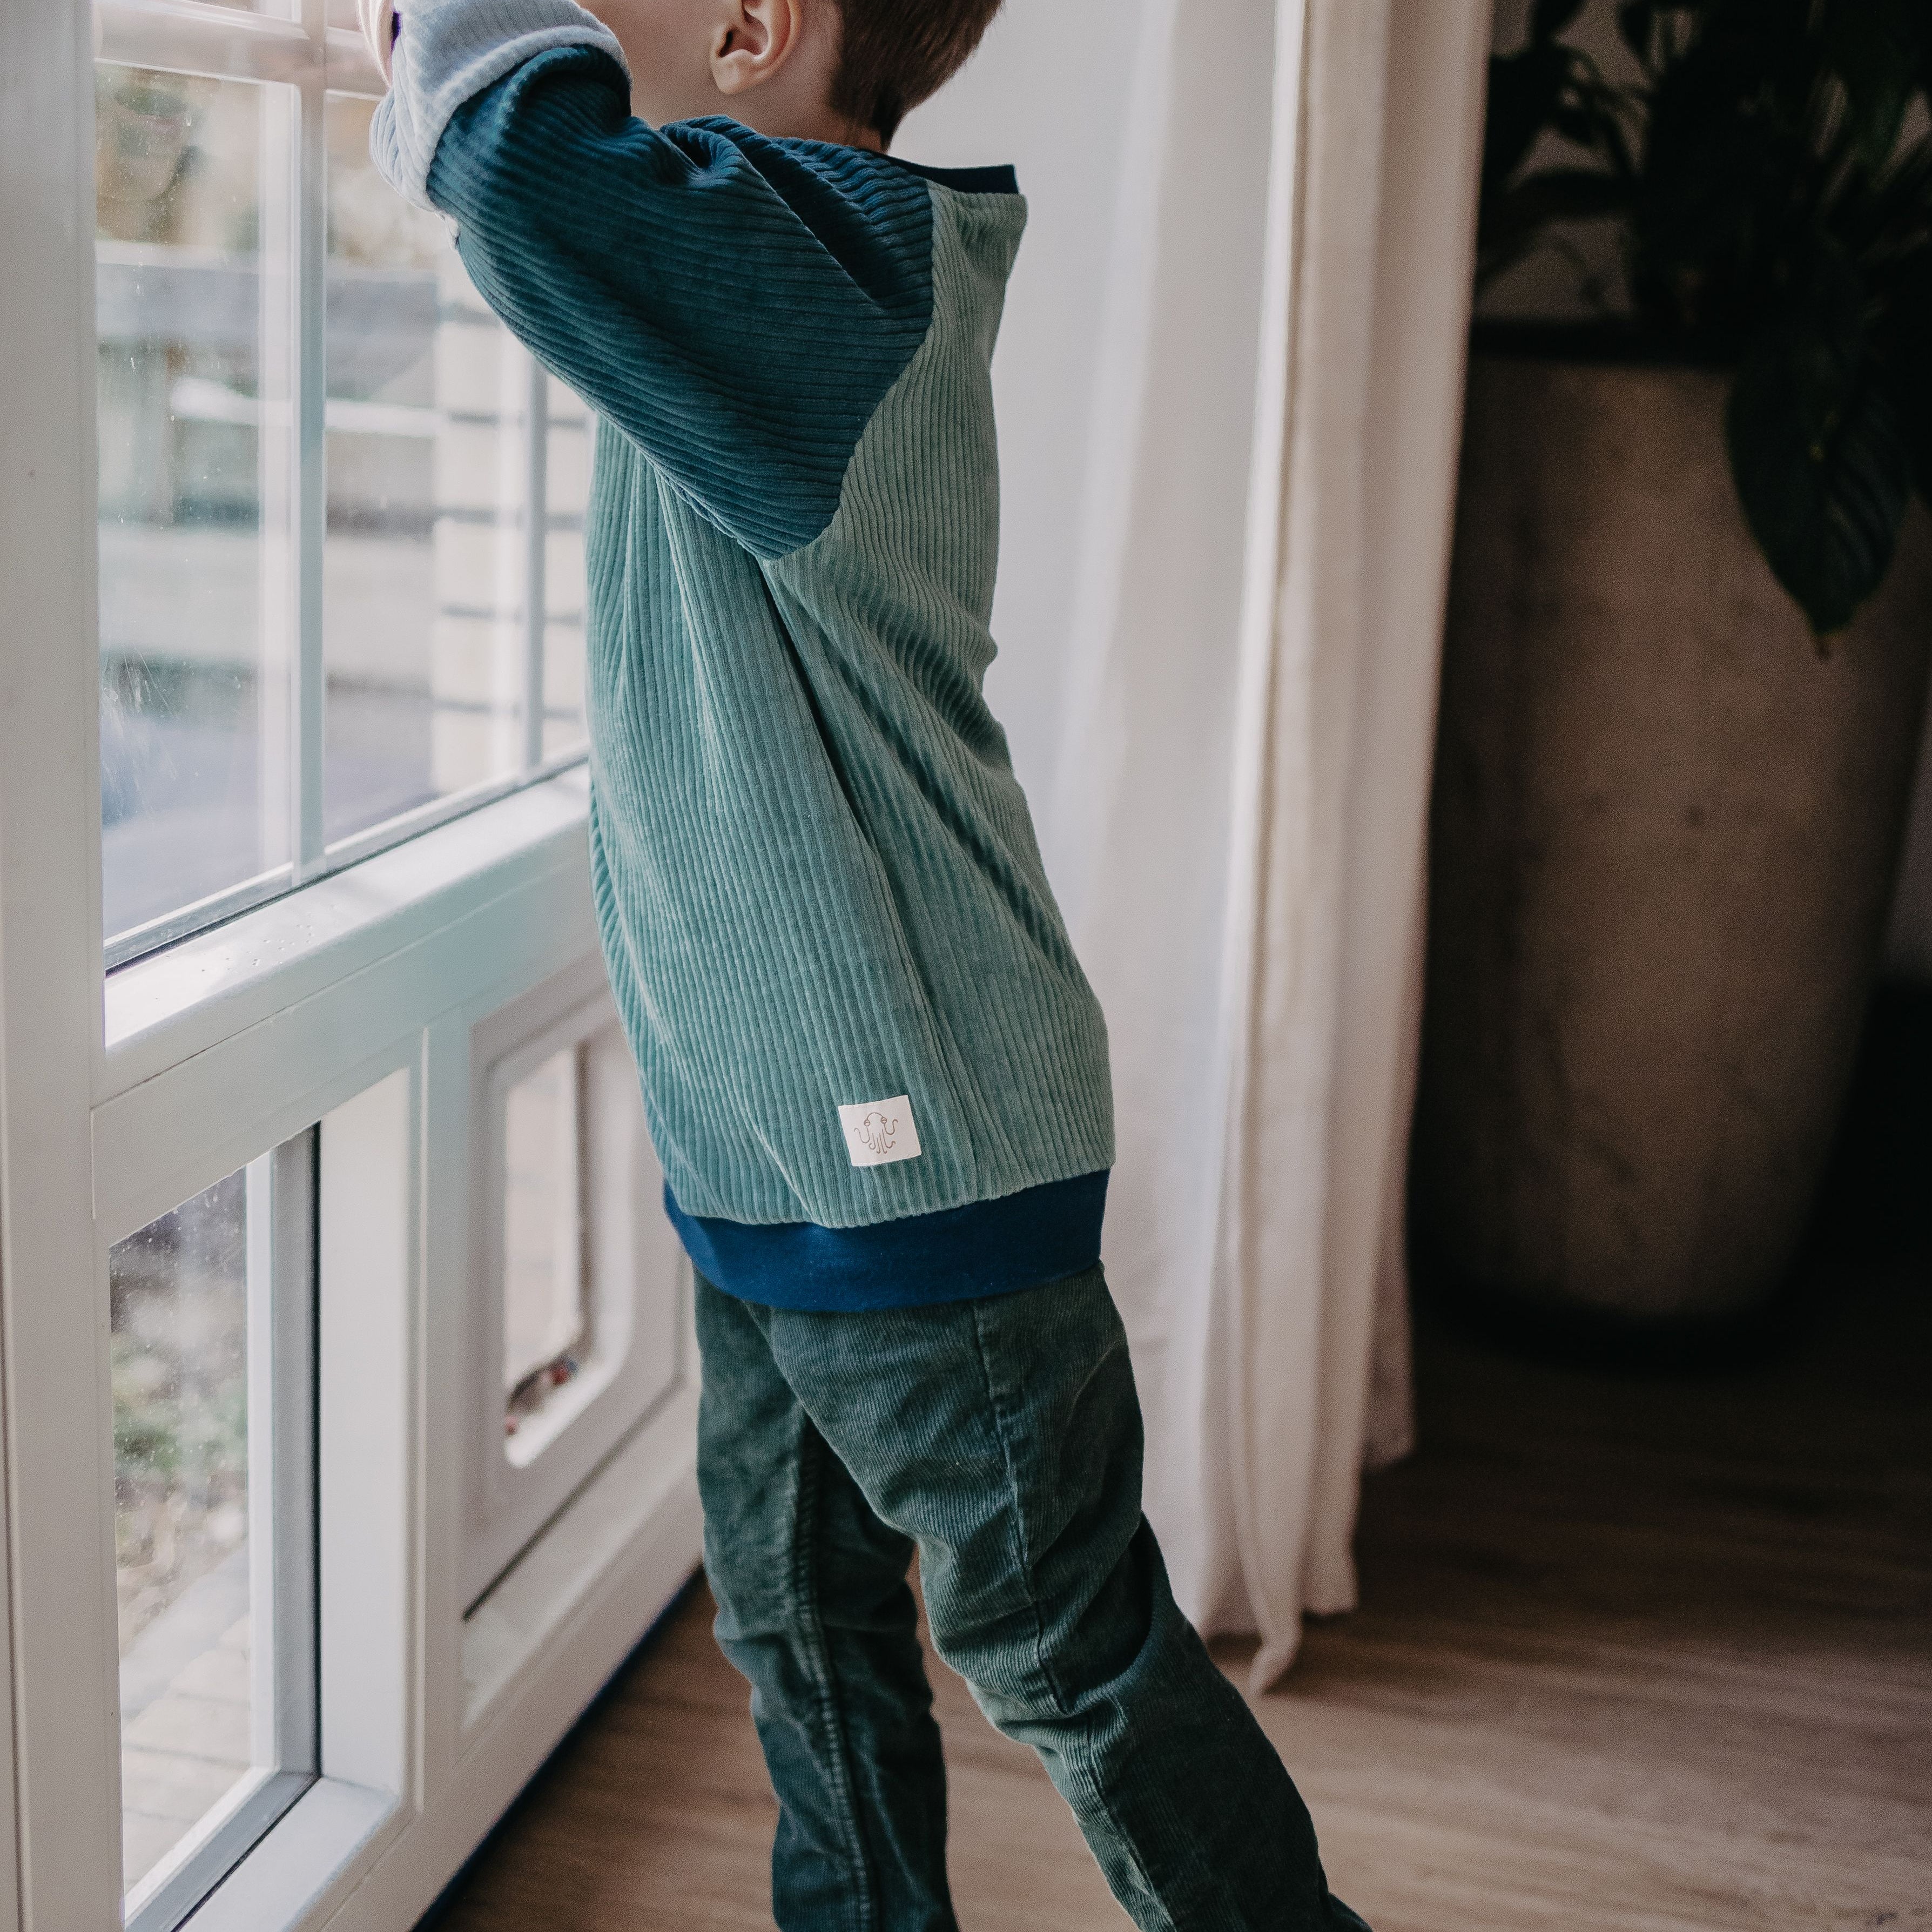  Ein Kind guckt aus dem Fenster und trägt dabei den blauen Alltagsbegleiter im Unisex-Schnitt von Oktopulli